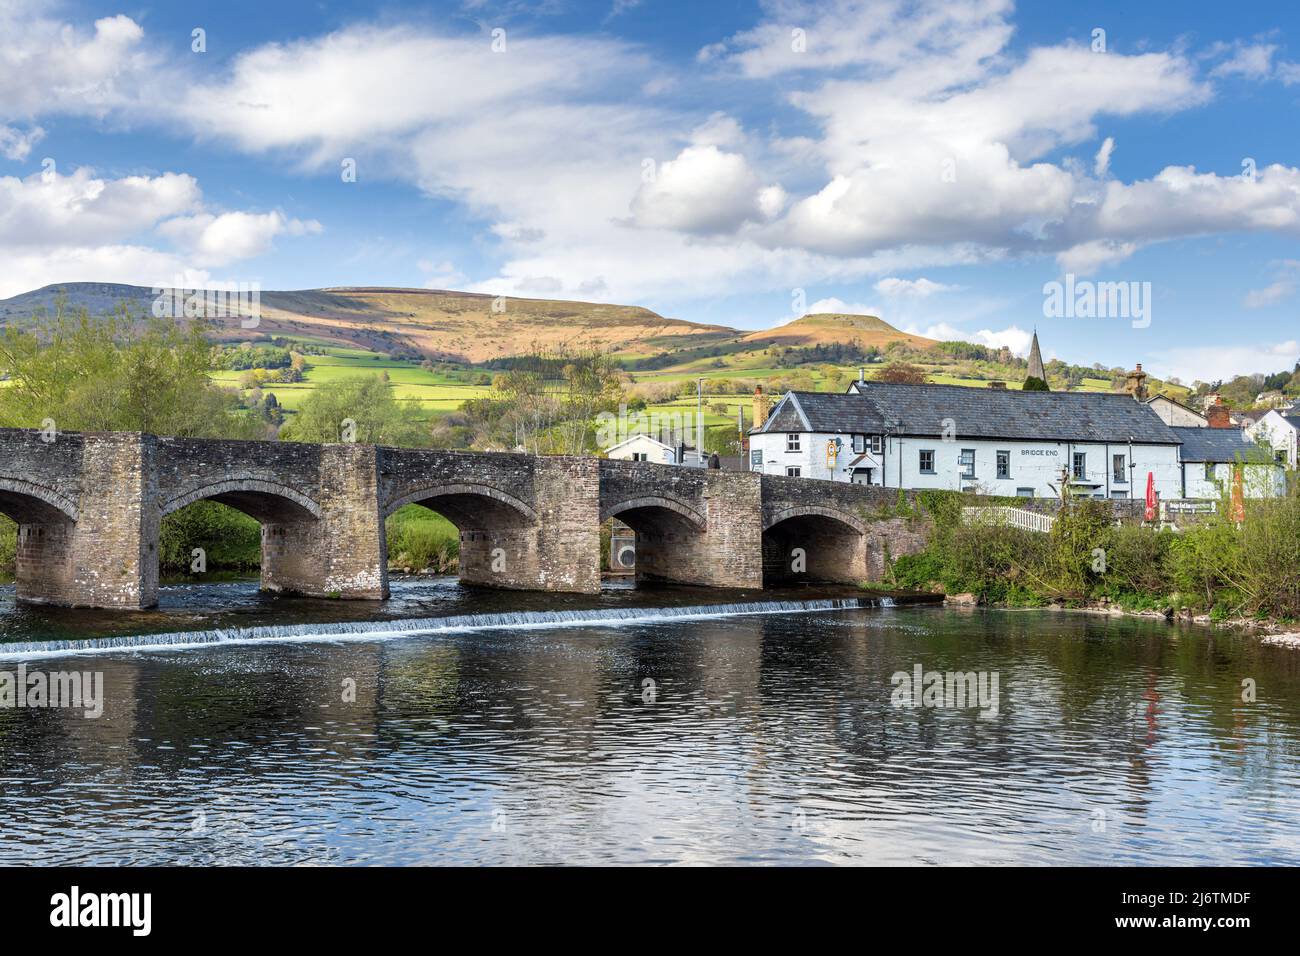 El Crickhowell Bridge, un puente de piedra del siglo 18th que atraviesa el río Usk en Crickhowell, Brecon Beacons, Powys, Gales. Foto de stock